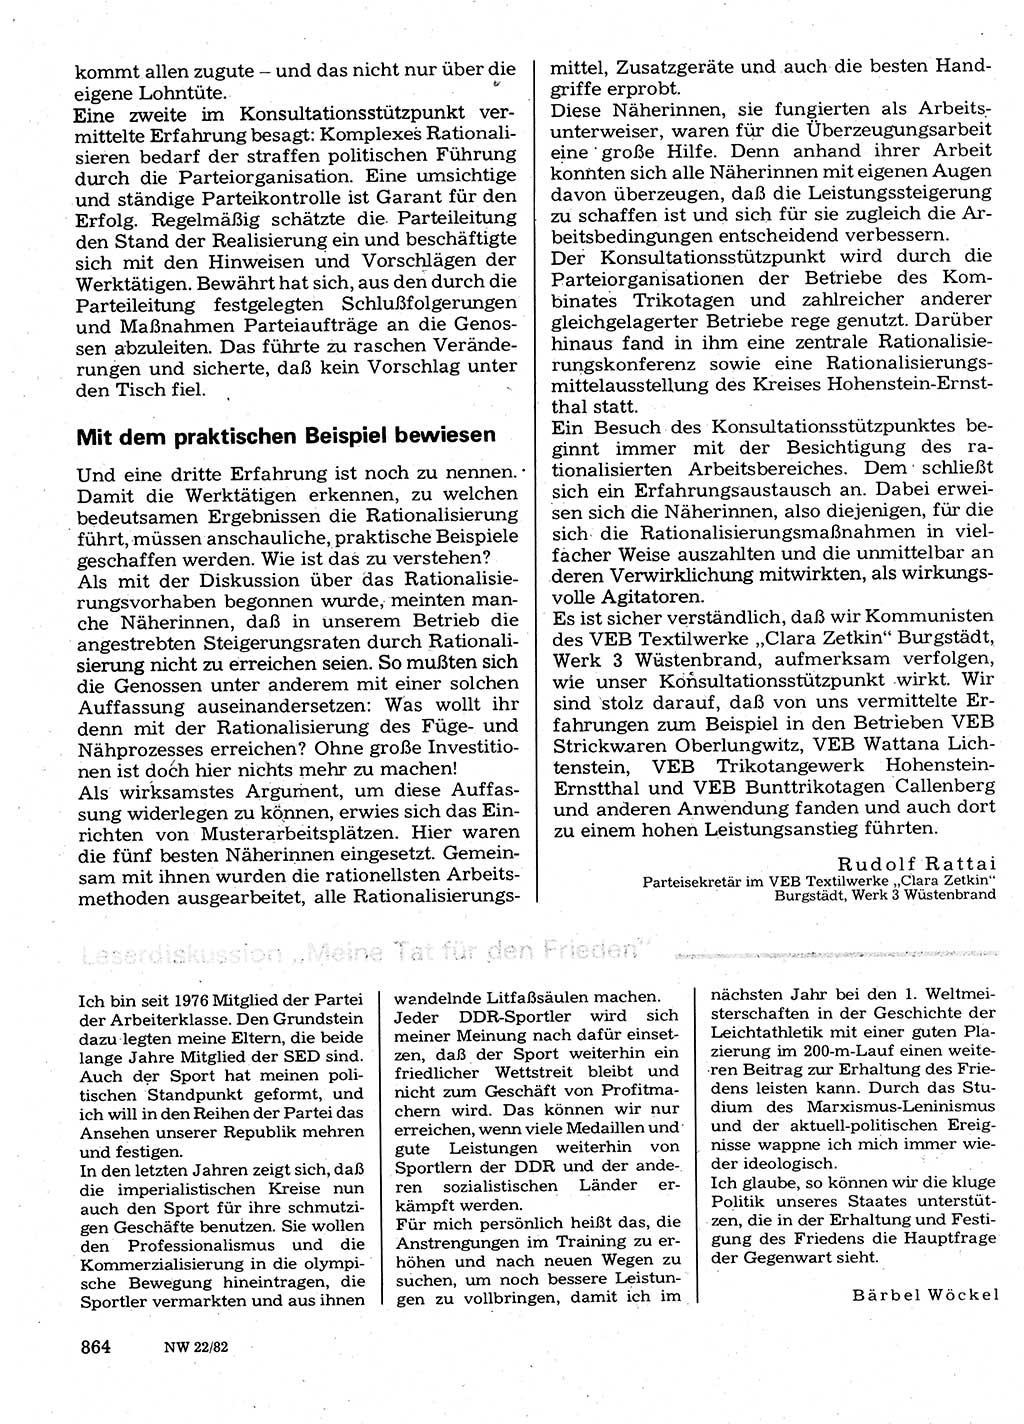 Neuer Weg (NW), Organ des Zentralkomitees (ZK) der SED (Sozialistische Einheitspartei Deutschlands) für Fragen des Parteilebens, 37. Jahrgang [Deutsche Demokratische Republik (DDR)] 1982, Seite 864 (NW ZK SED DDR 1982, S. 864)